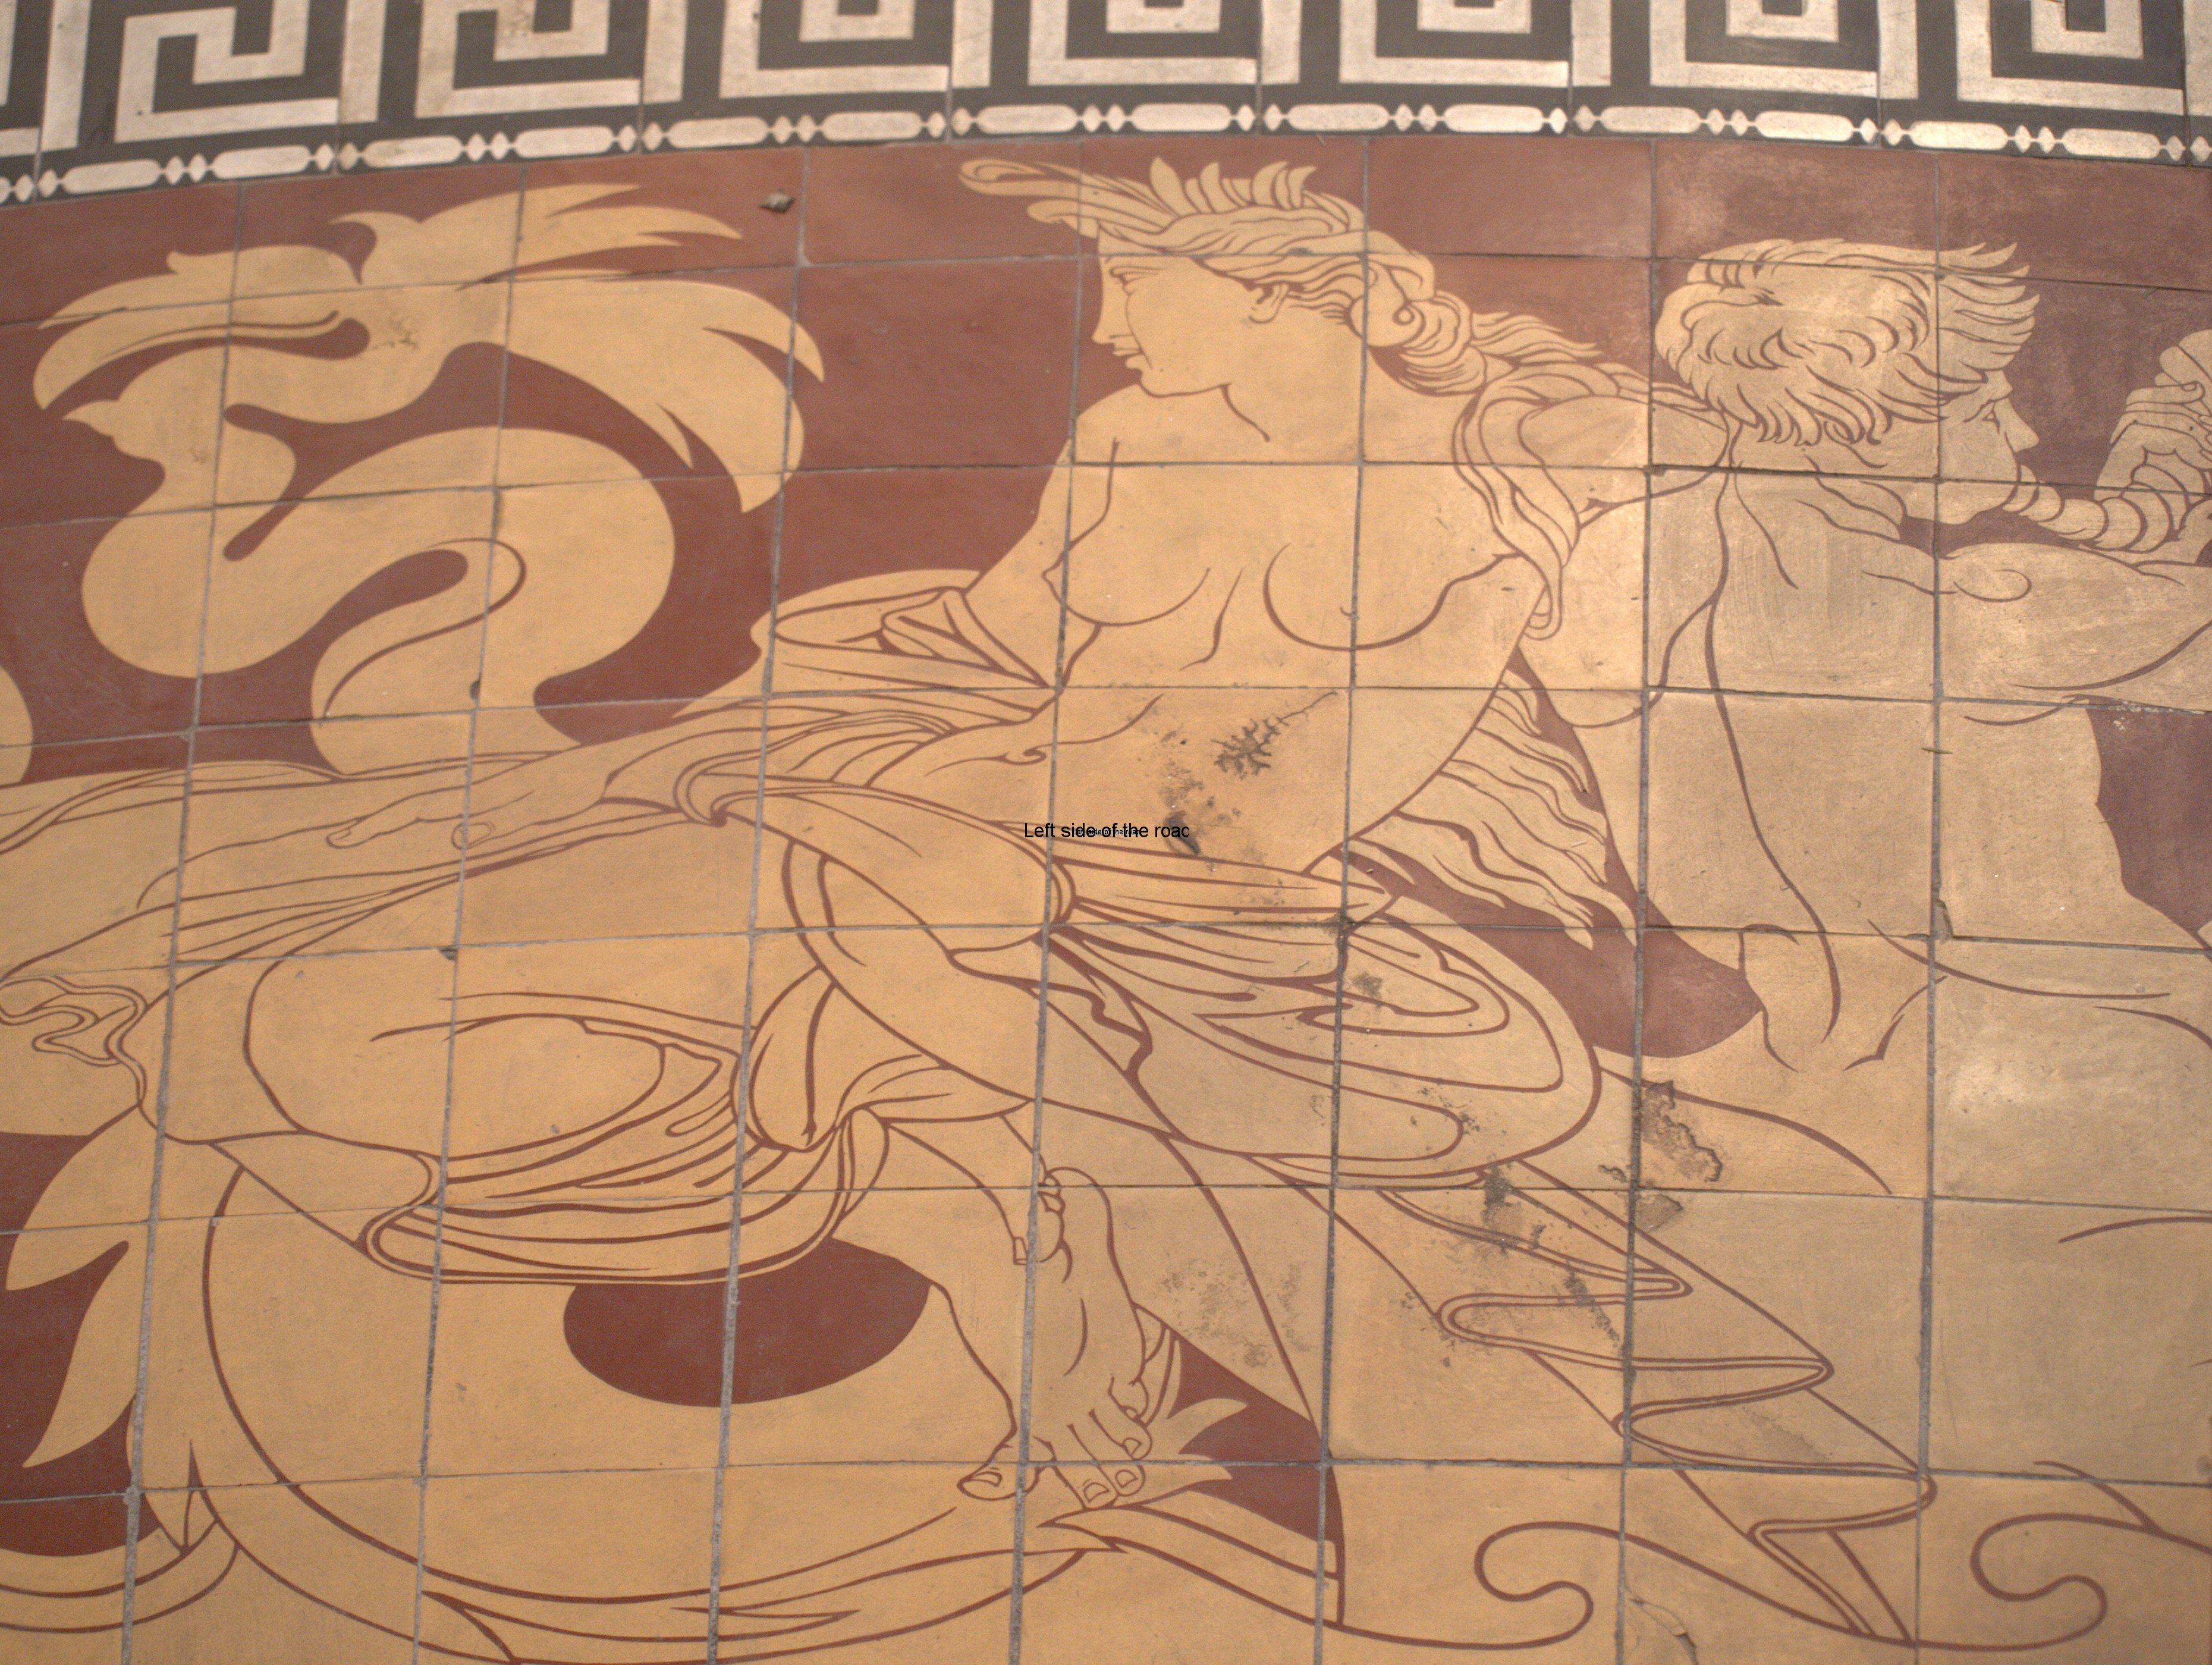 Minton Tile Floor, St George's Hall Liverpool